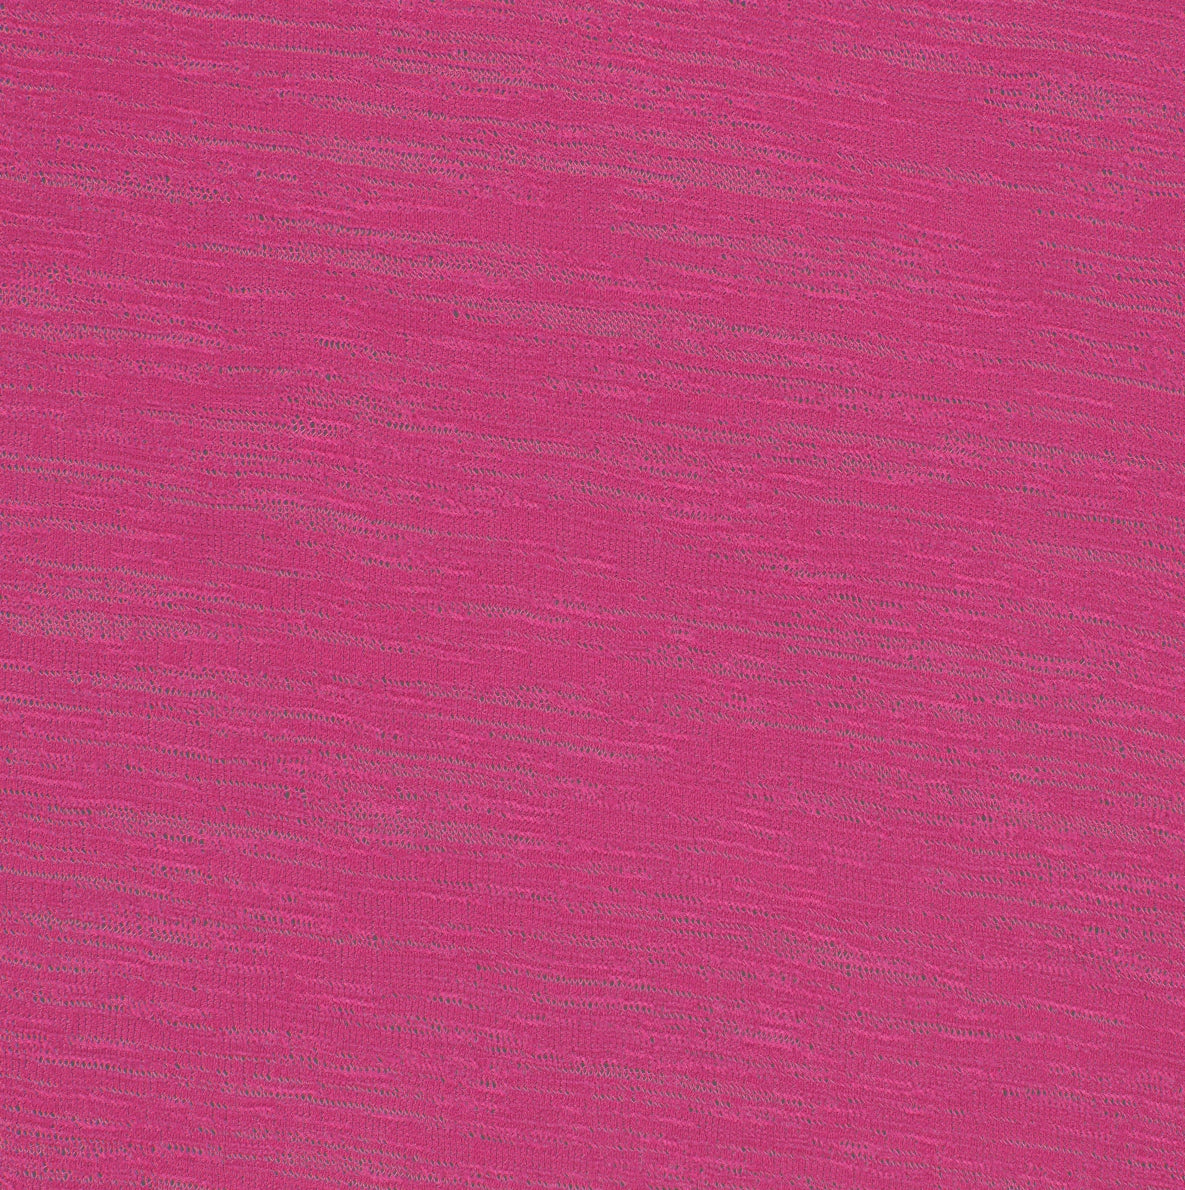 15011-05 Violet Red Polyester Plain Dyed 100% 58" 95g/yd knit pink plain dyed polyester Solid Color - knit fabric - woven fabric - fabric company - fabric wholesale - fabric b2b - fabric factory - high quality fabric - hong kong fabric - fabric hk - acetate fabric - cotton fabric - linen fabric - metallic fabric - nylon fabric - polyester fabric - spandex fabric - chun wing hing - cwh hk - fabric worldwide ship - 針織布 - 梳織布 - 布料公司- 布料批發 - 香港布料 - 秦榮興